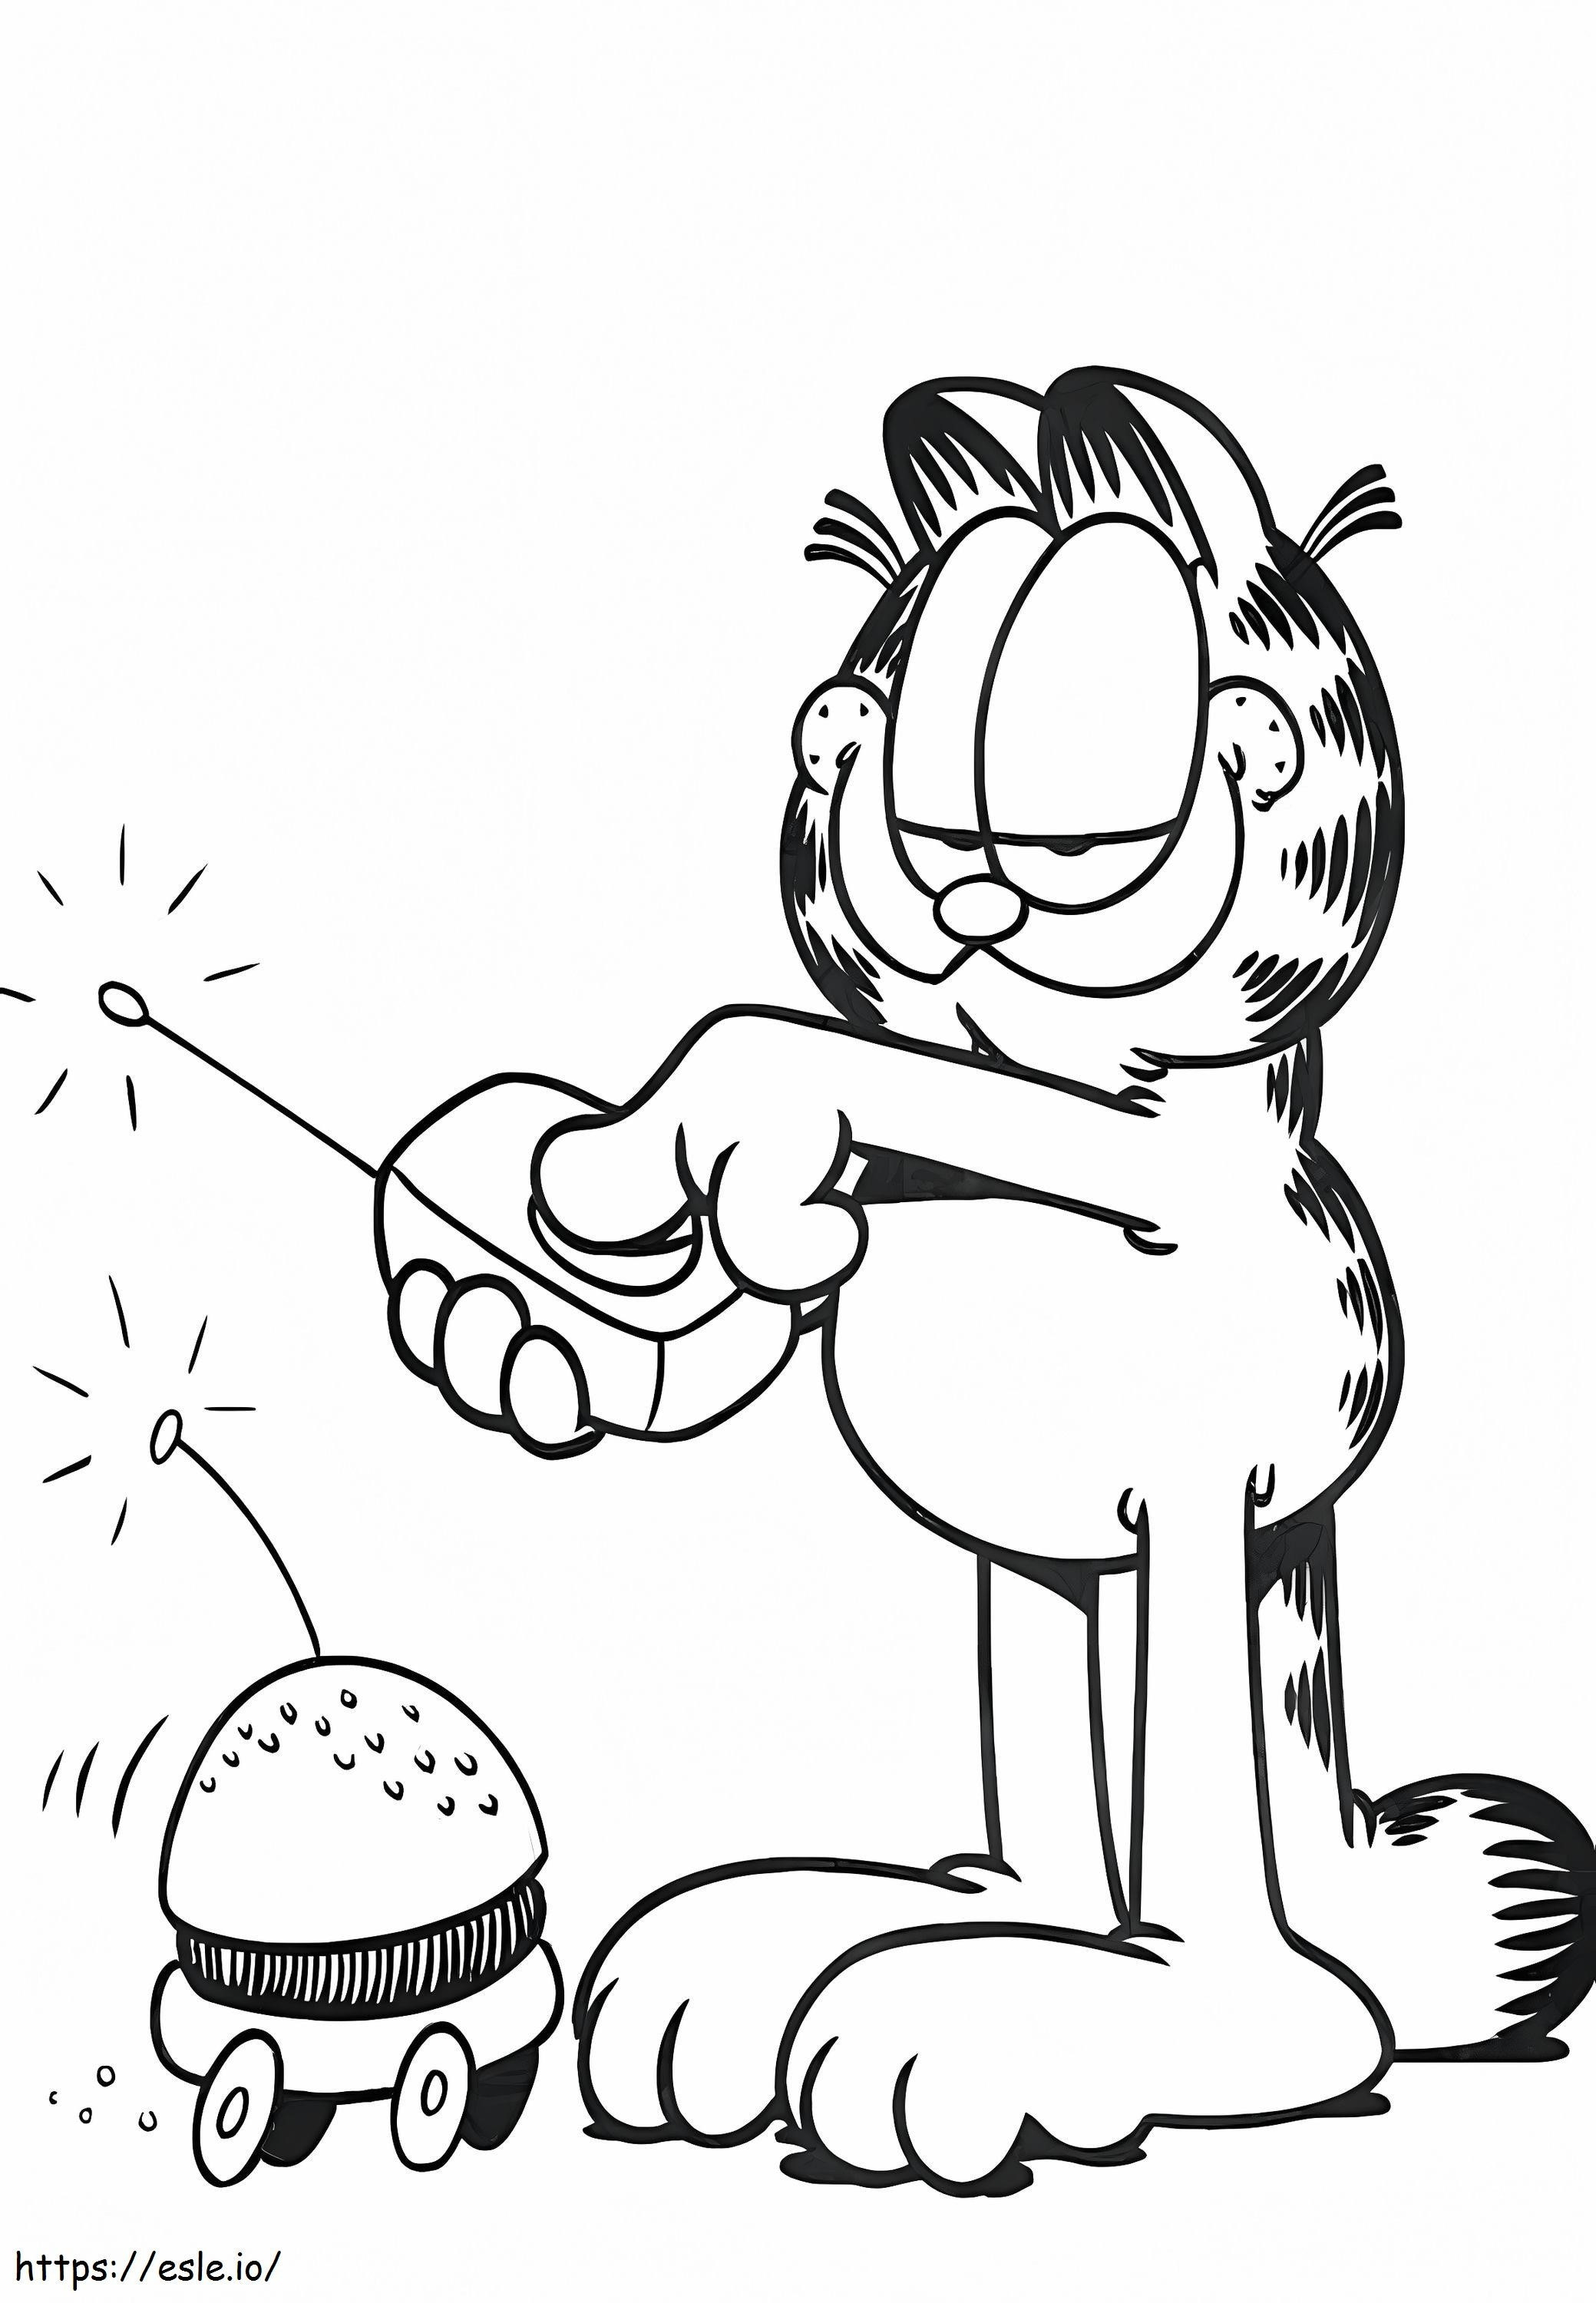 Garfield Drives A Hamburger coloring page